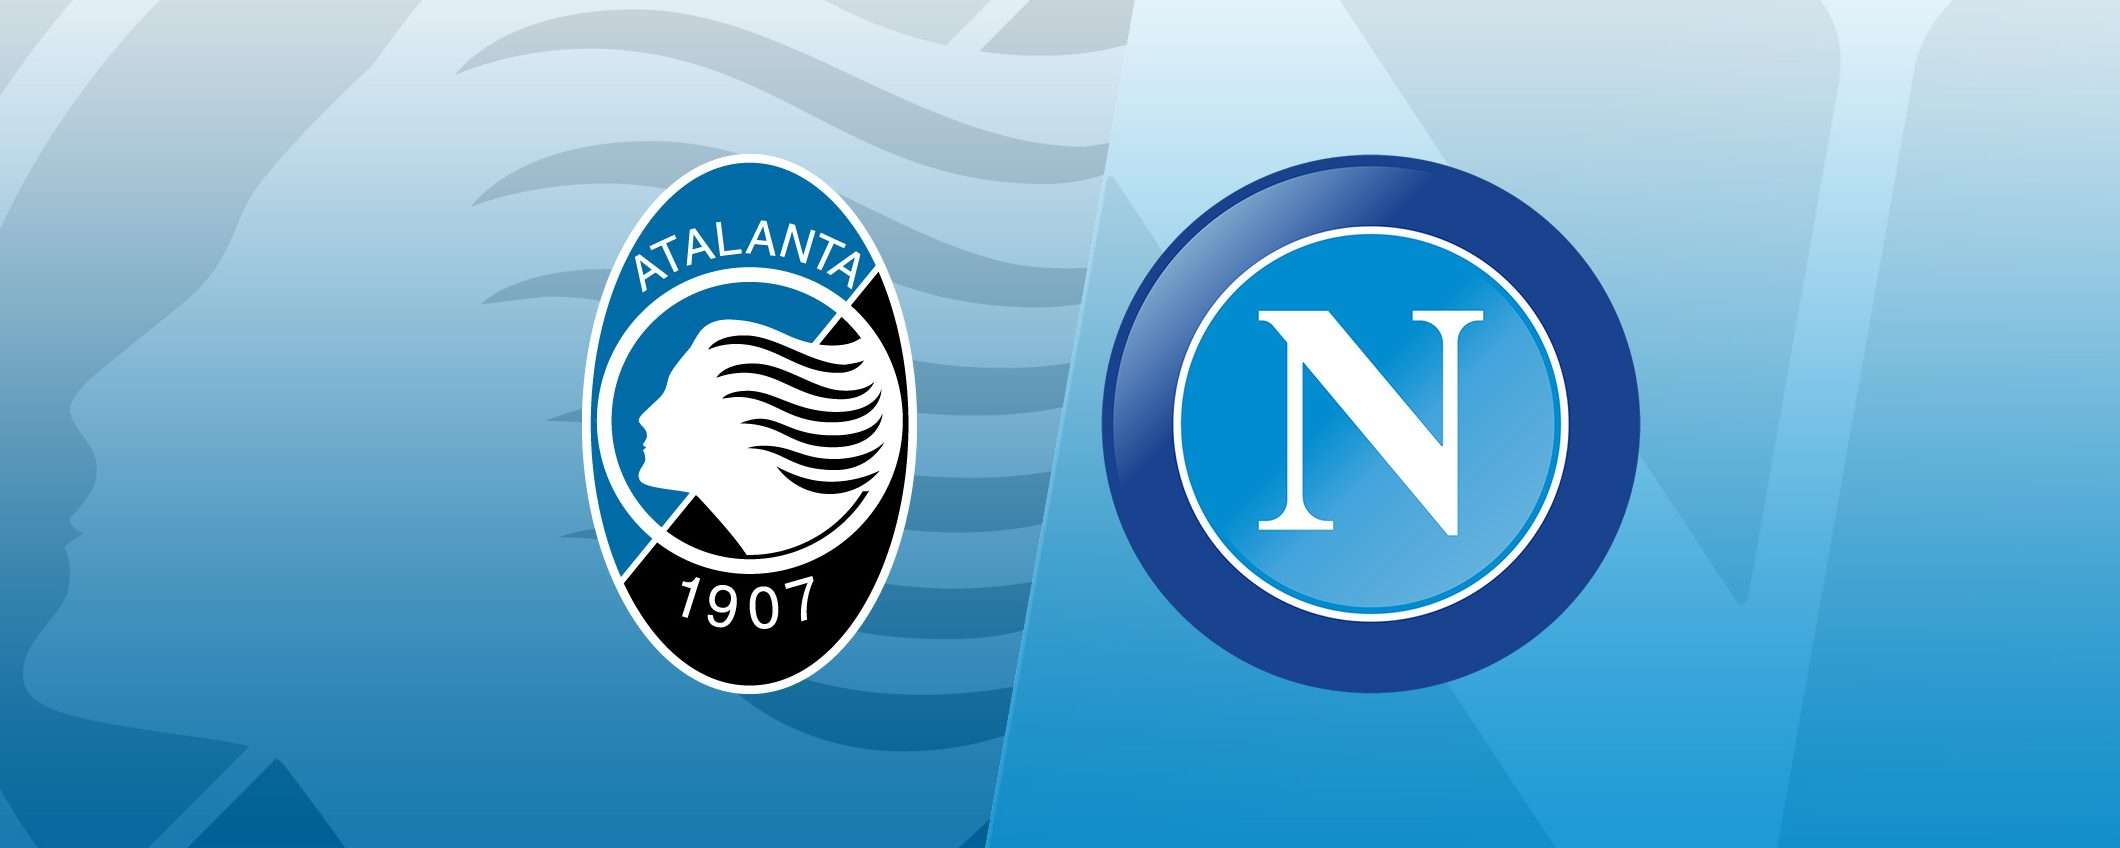 Come vedere Atalanta-Napoli in streaming (Serie A)